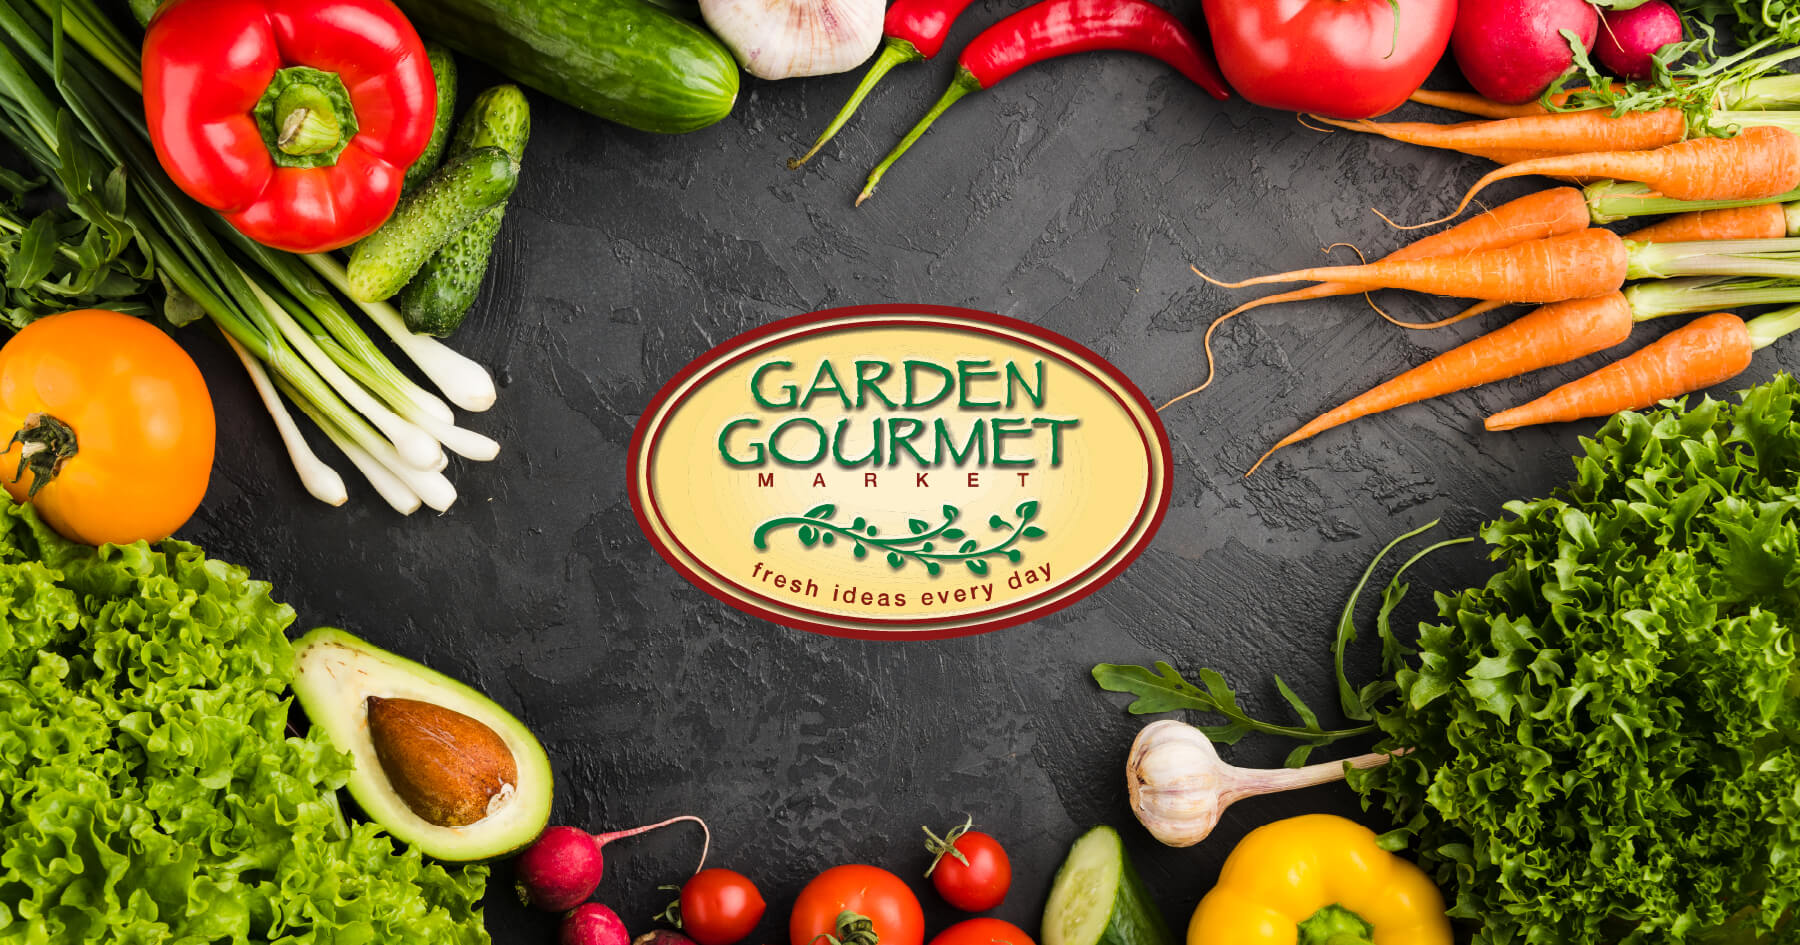 Contact Us Garden Gourmet Market - Online Ordering